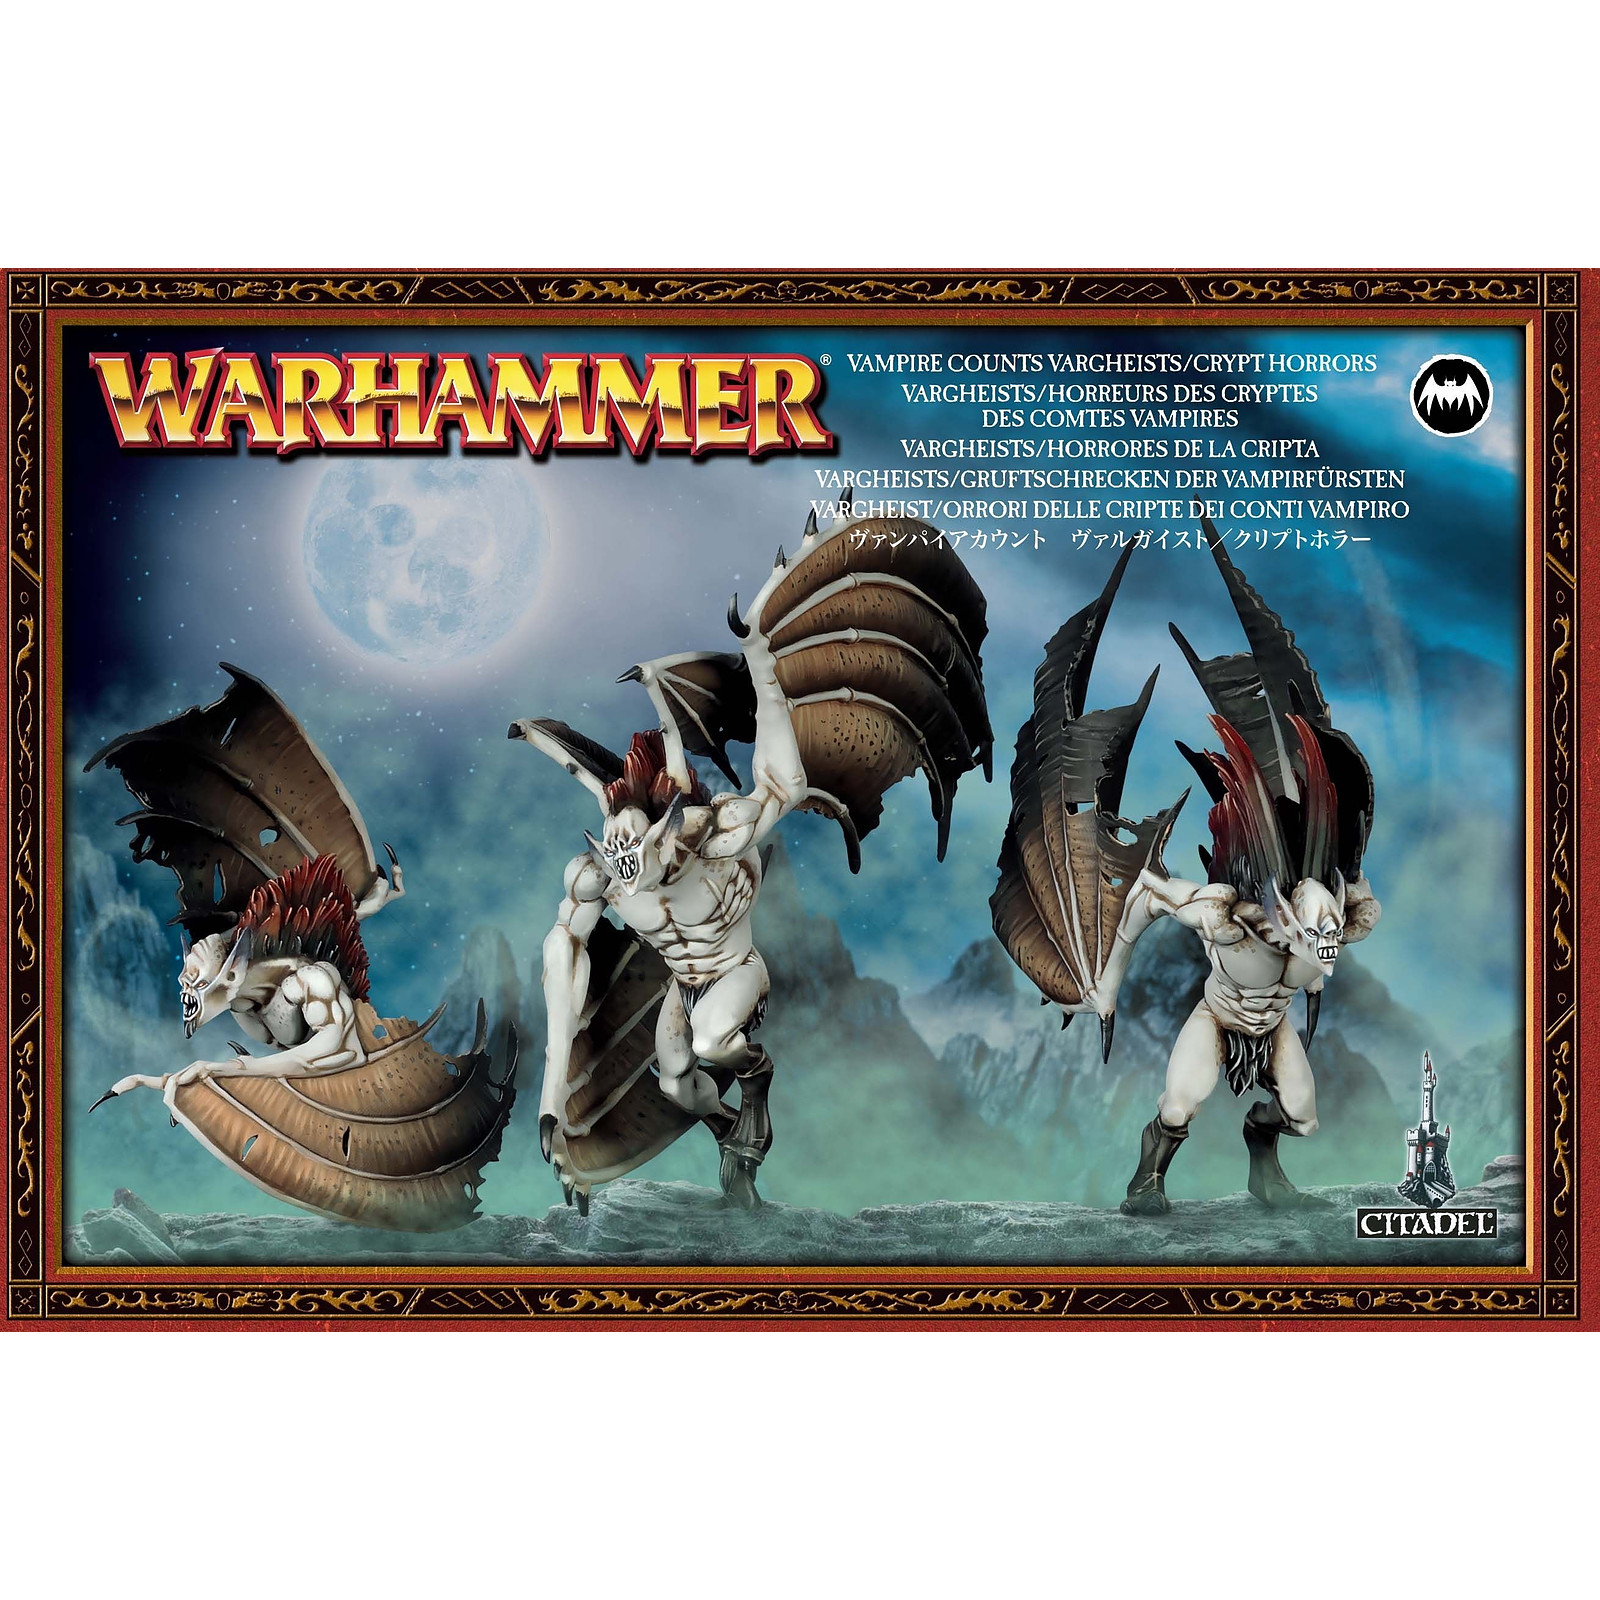 Warhammer AoS - Comtes Vampires Vargheists / horreurs des cryptes - Jeux de figurines Games workshop